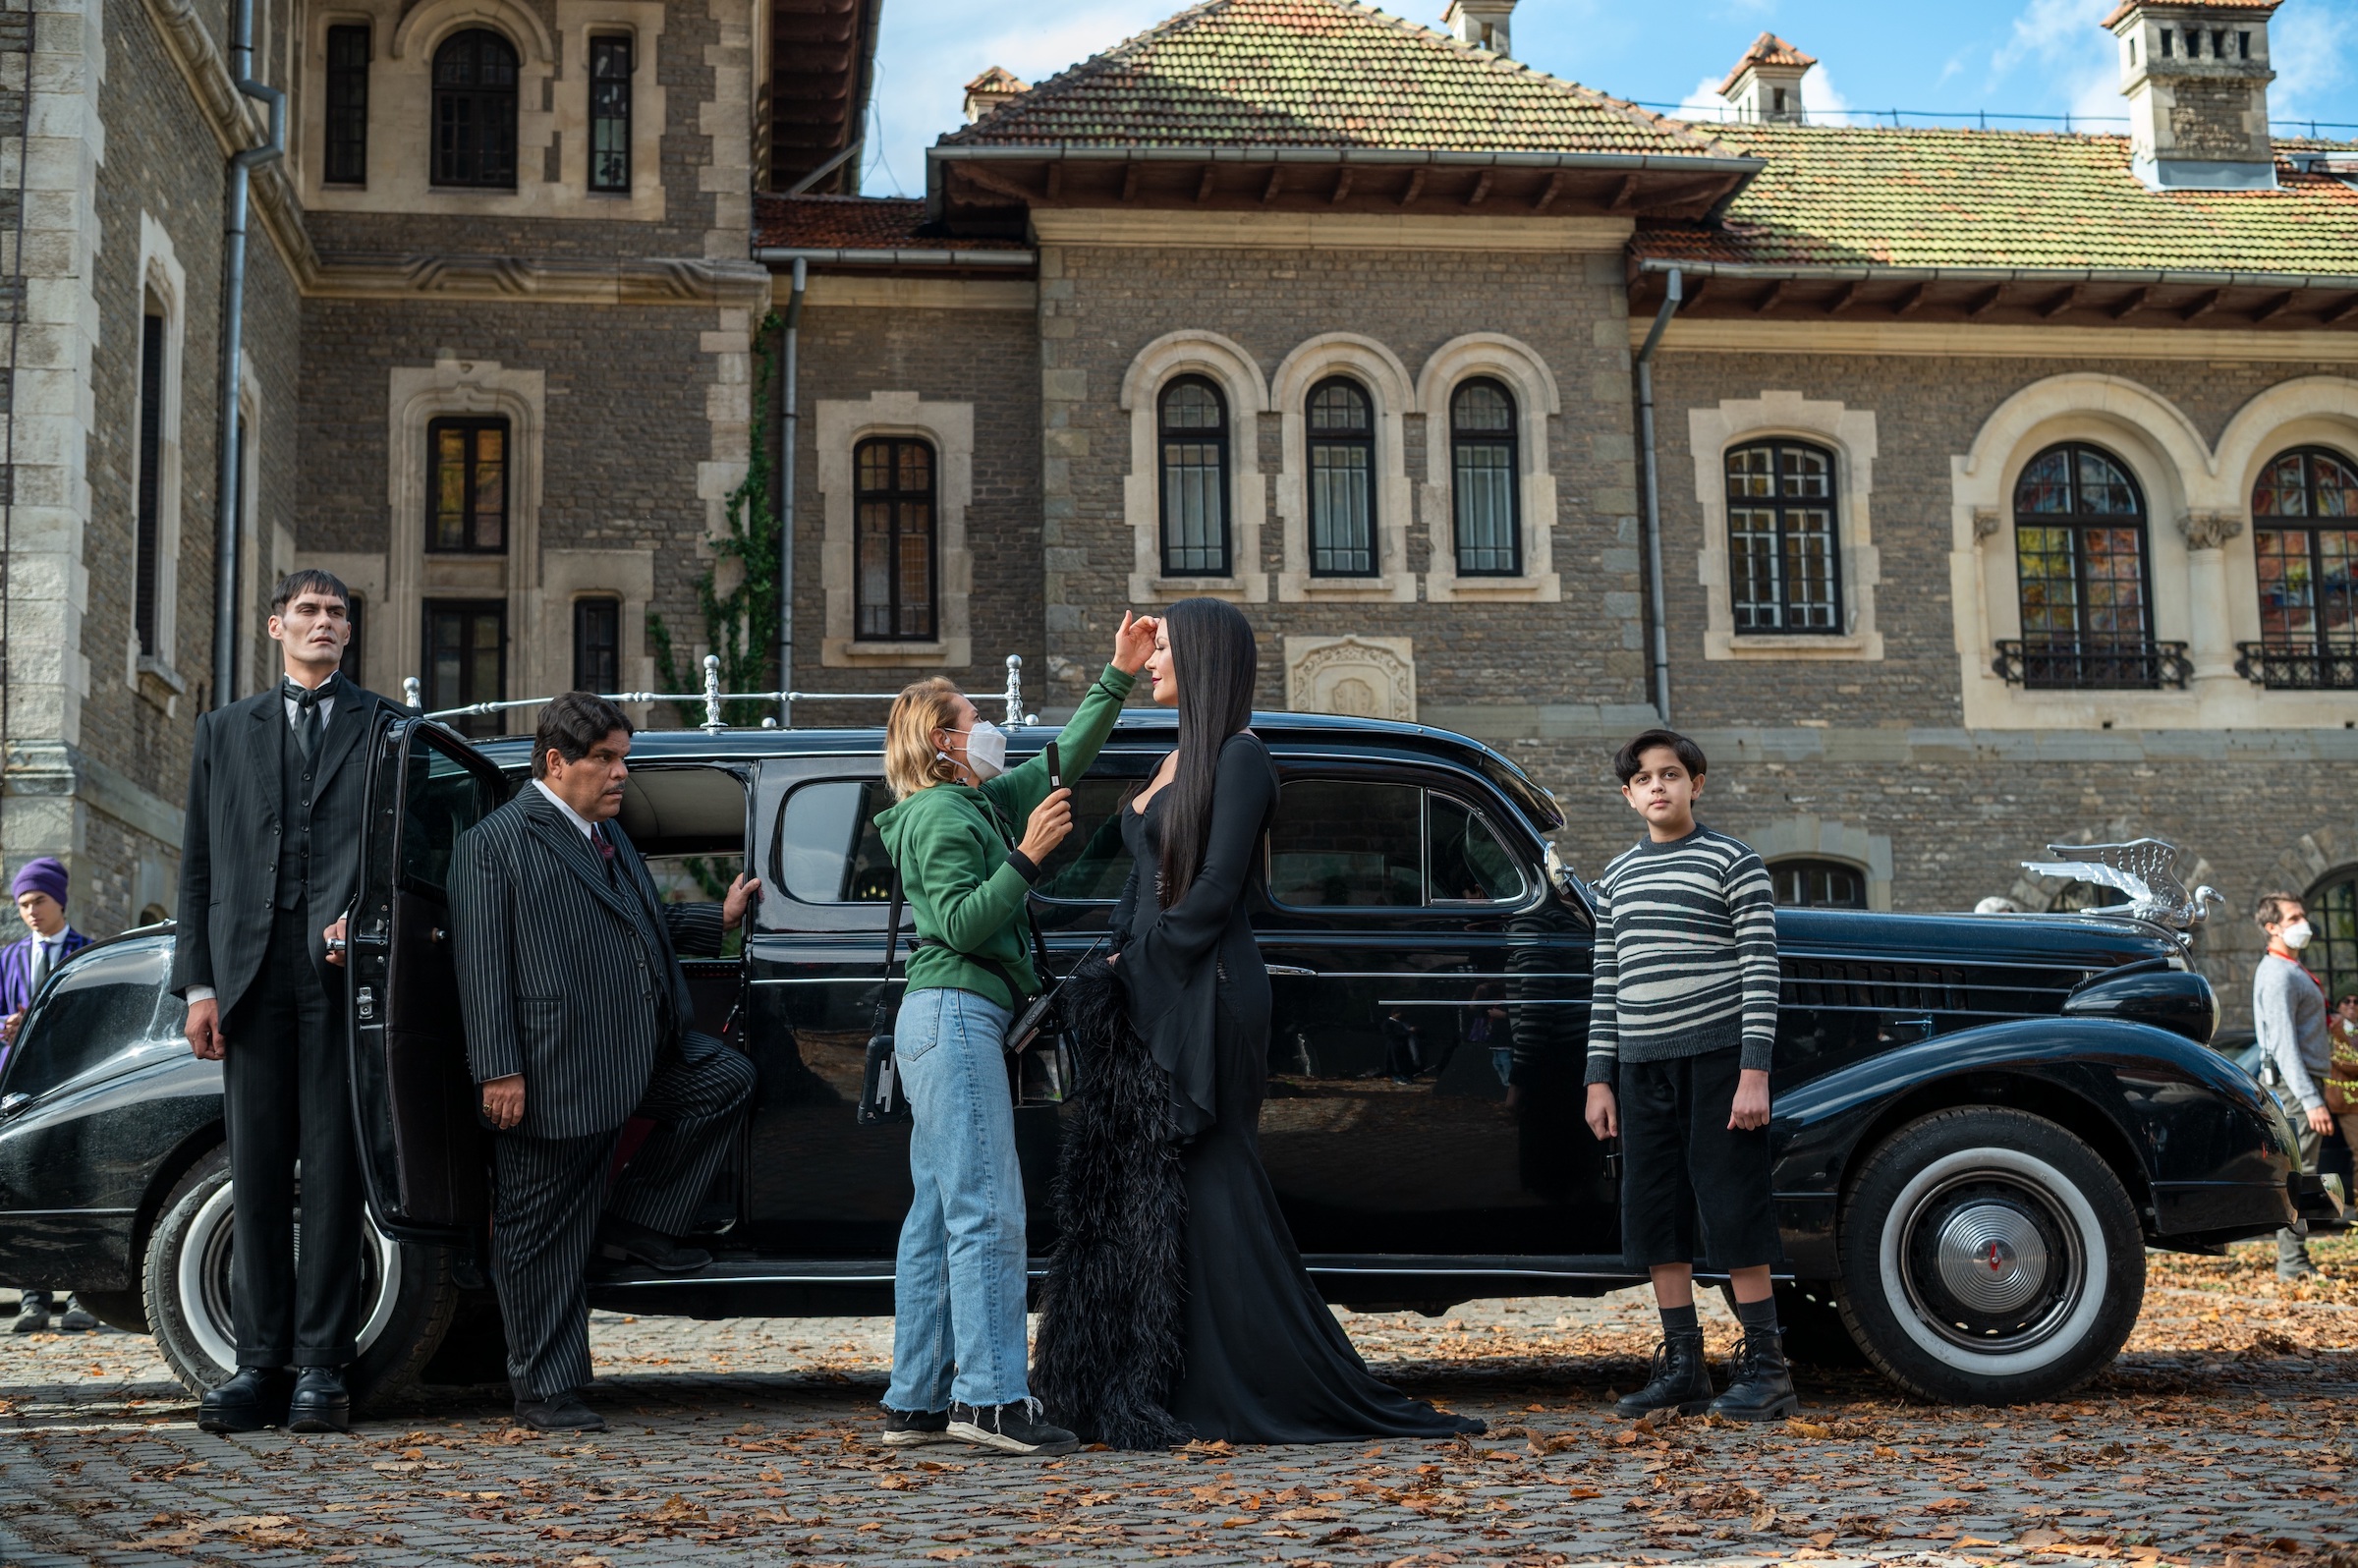 Butler Lurch (George Burcea), Gomez (Luis Guzman), Morticia (Catherine Zeta-Jones) and Pugsley (Issac Ordonez) visit Nevermore Academy for Parents' Weekend.  (Vlad Cioplea - Netflix)